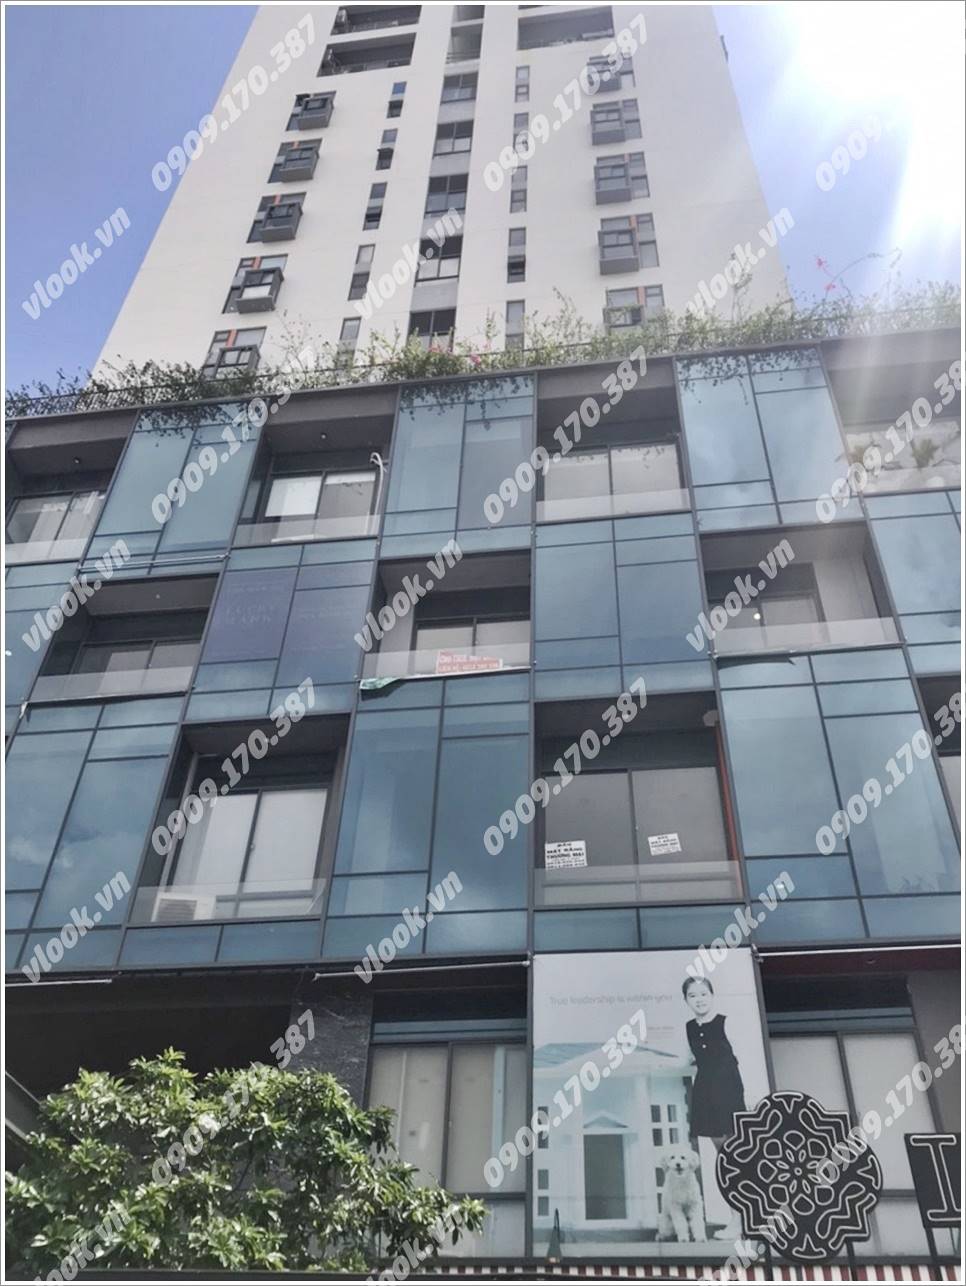 Cao ốc văn phòng cho thuê tòa nhà La Astoria Plaza, Nguyễn Duy Trinh, Quận 2, TP Thủ Đức, TPHCM - vlook.vn